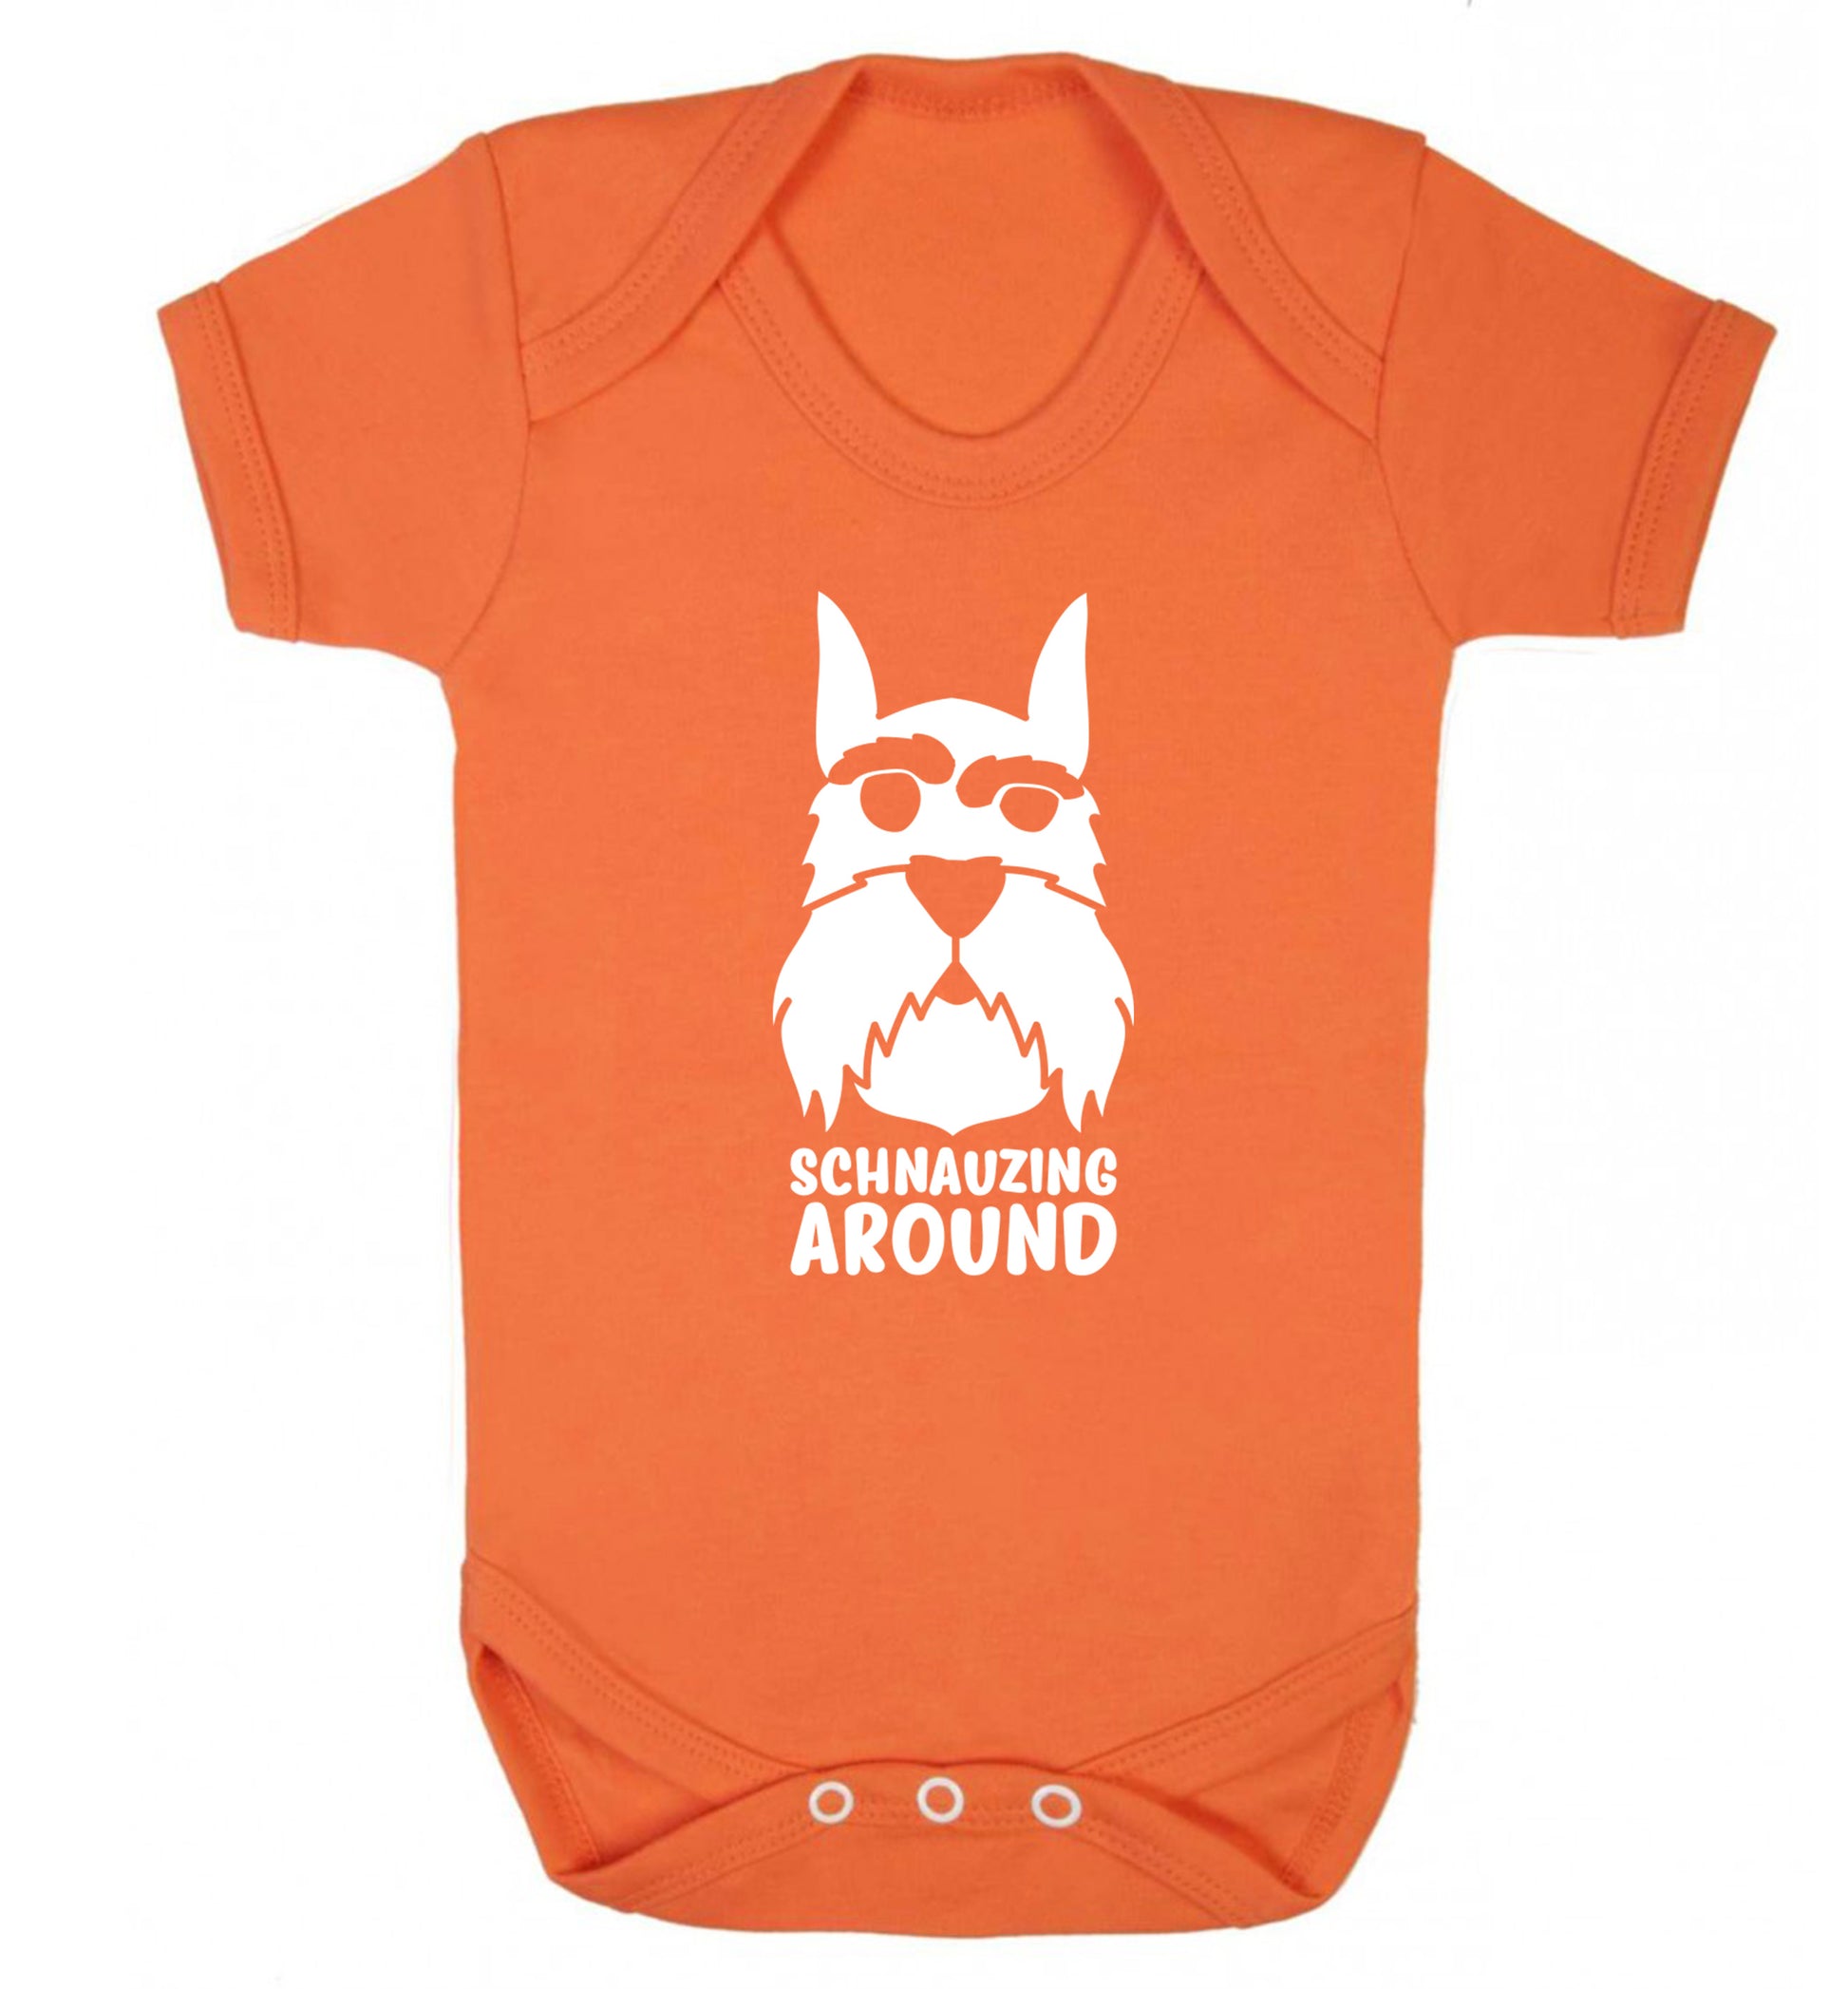 Schnauzing Around Baby Vest orange 18-24 months